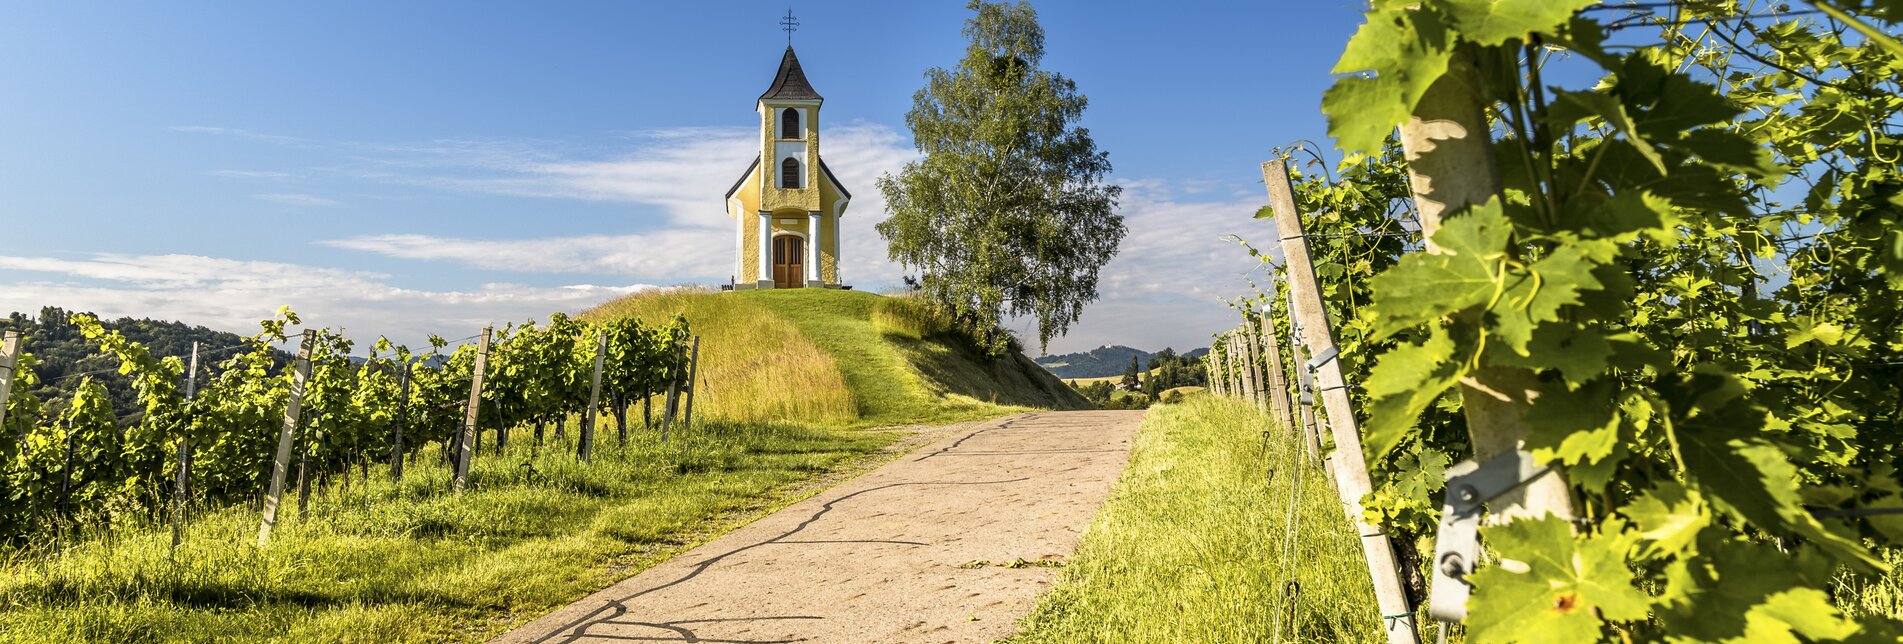 Dreisiebner-Kapelle in Eichberg-Trautenburg | © Steiermark Tourismus | Wolfgang Jauk